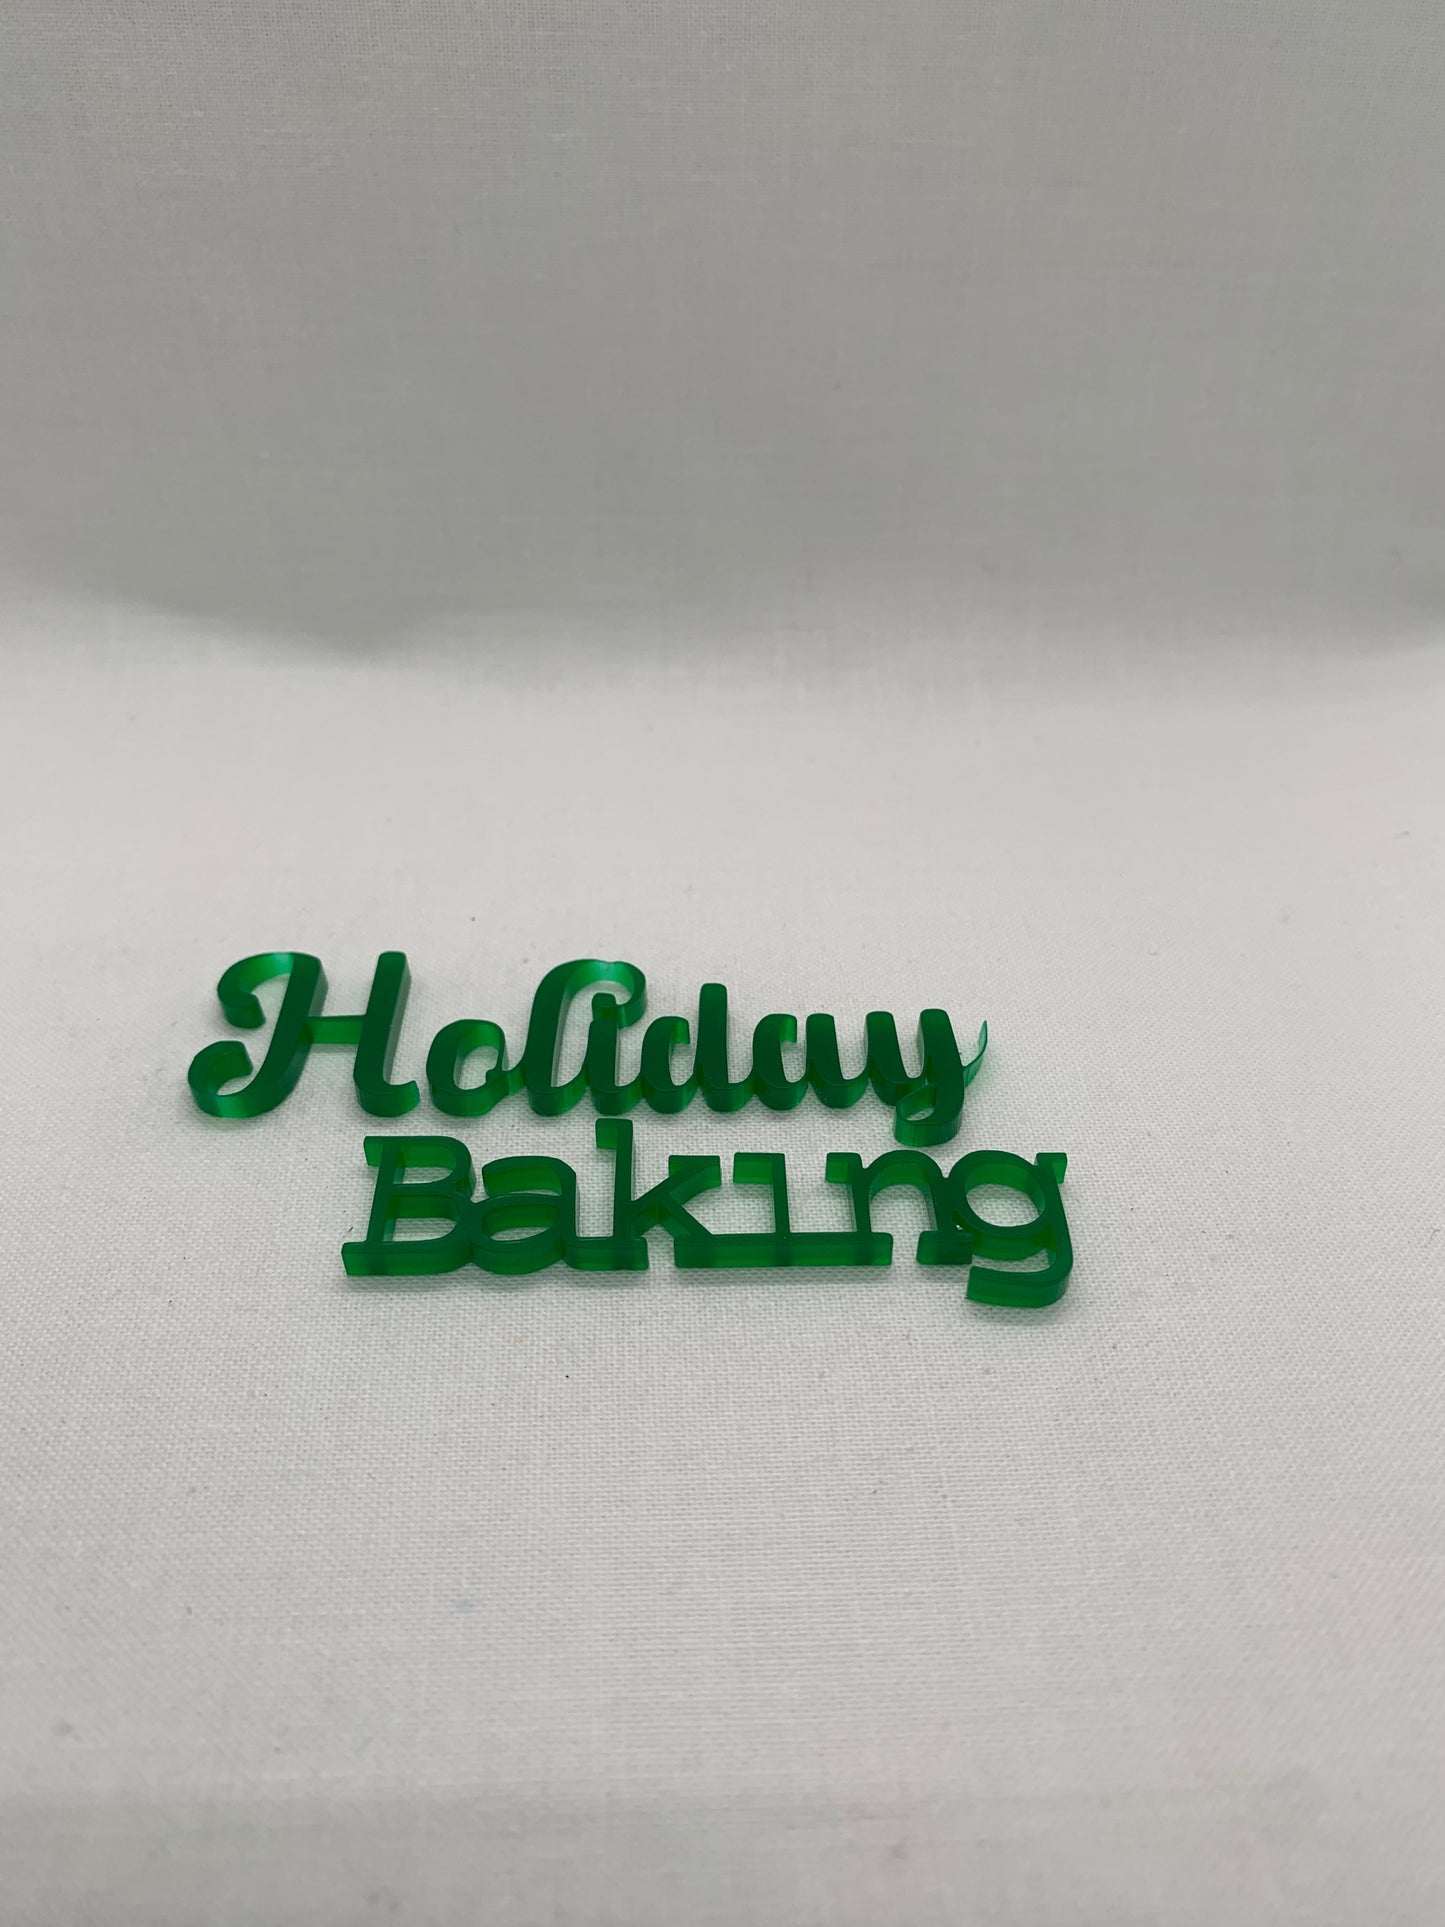 Holiday baking - Creative Designs By Kari